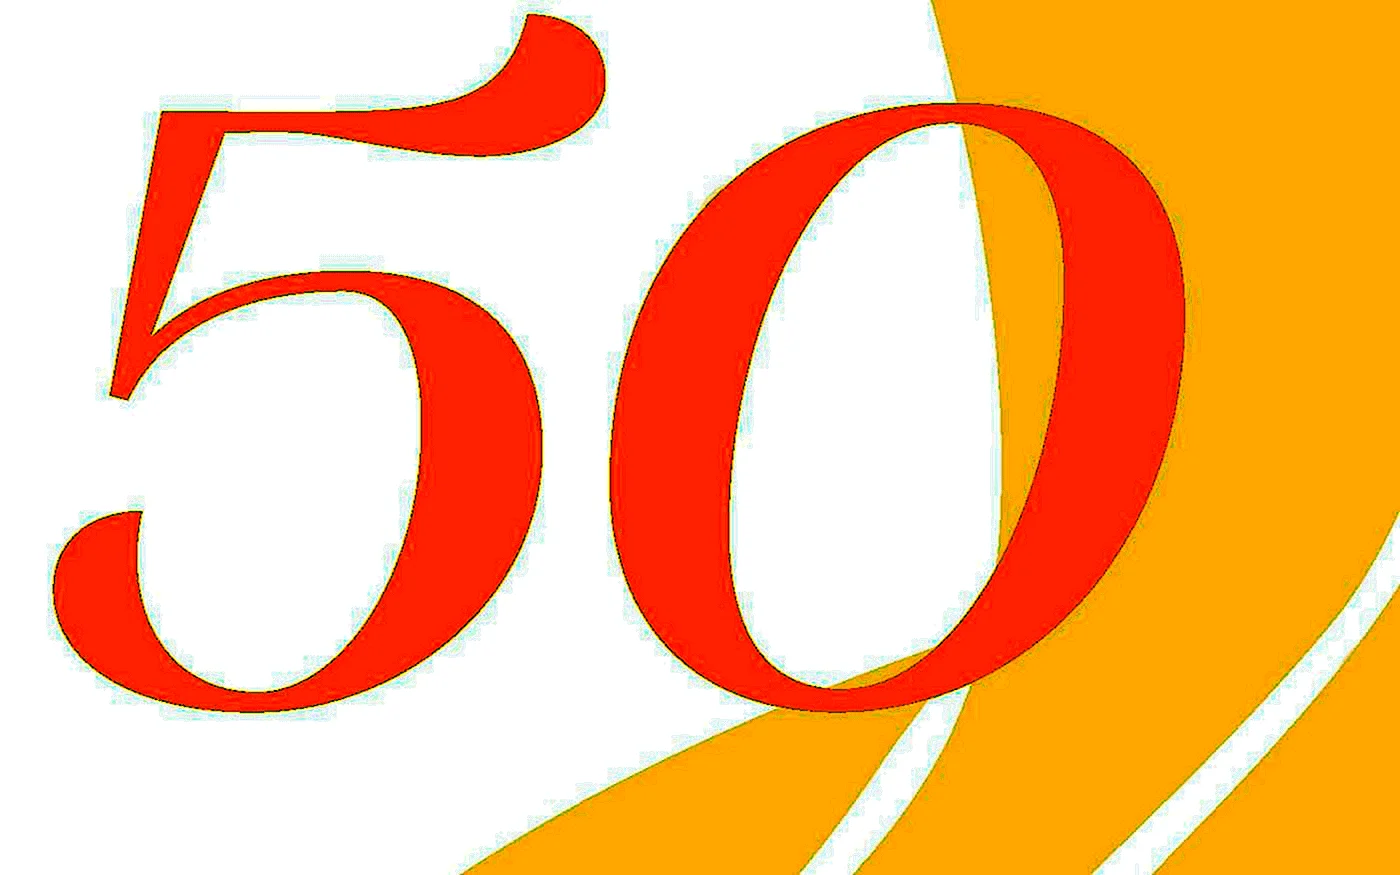 Цифра 50